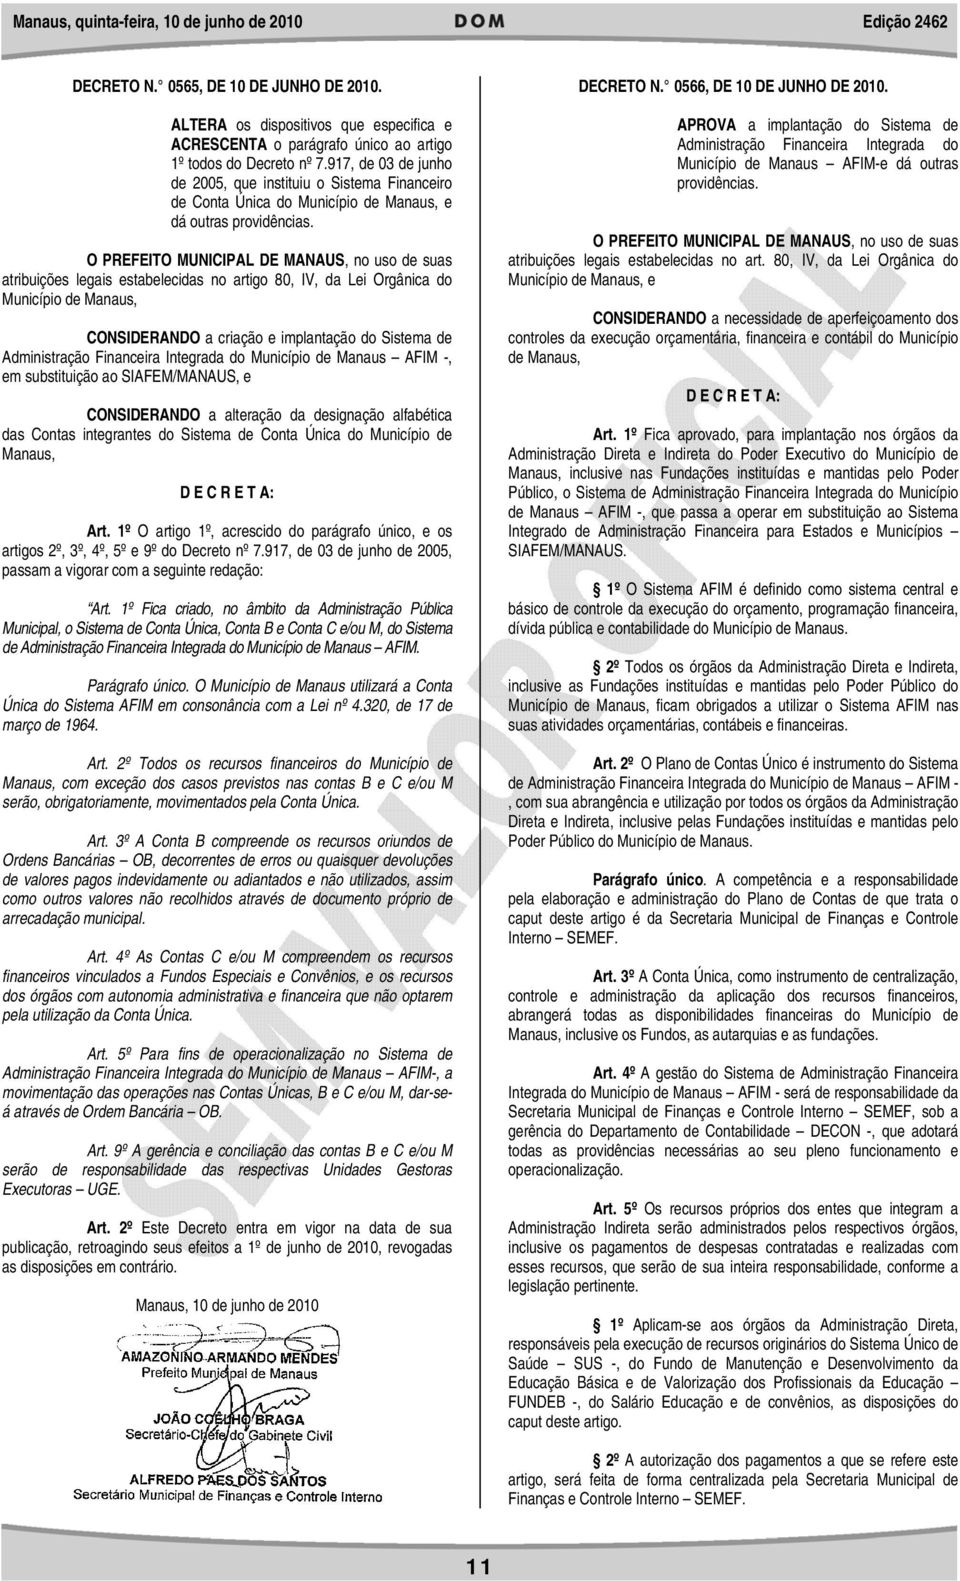 O PREFEITO MUNICIPAL DE MANAUS, no uso de suas atribuições legais estabelecidas no artigo 80, IV, da Lei Orgânica do Município de Manaus, CONSIDERANDO a criação e implantação do Sistema de